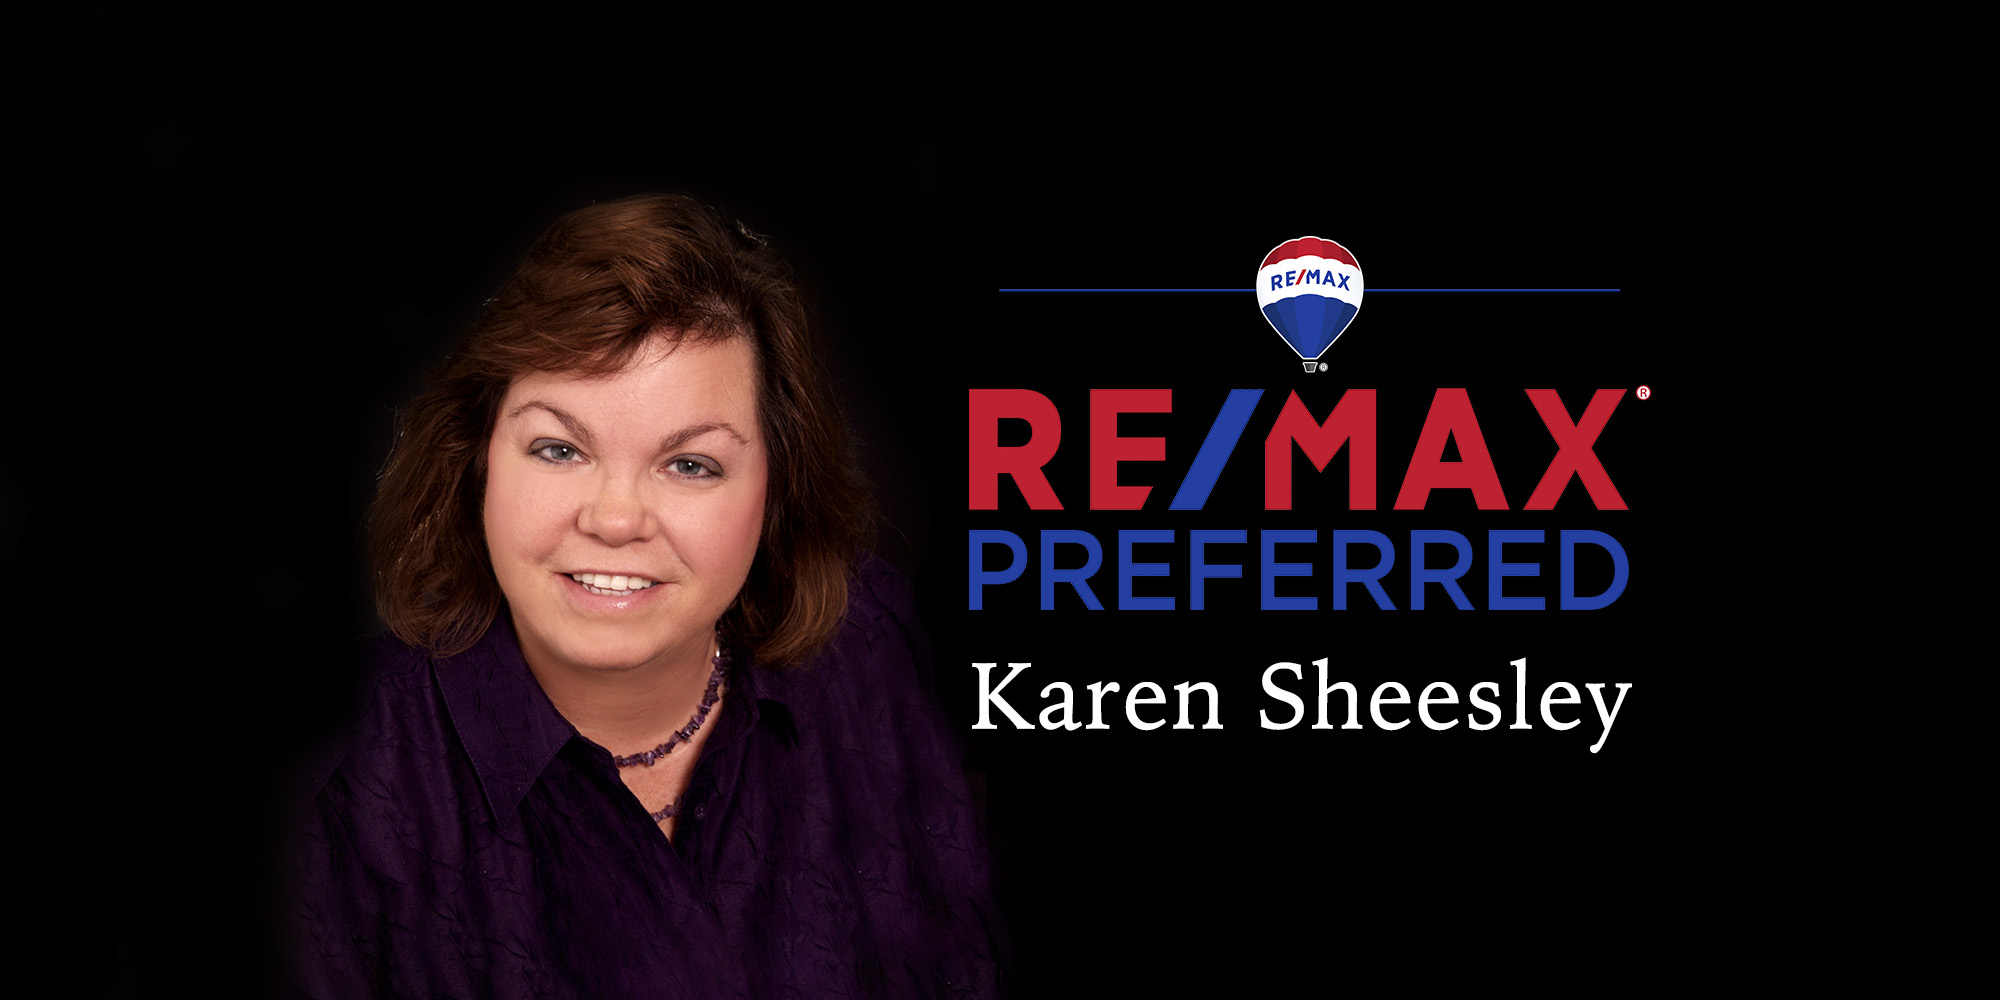 Karen Sheesley of Remax